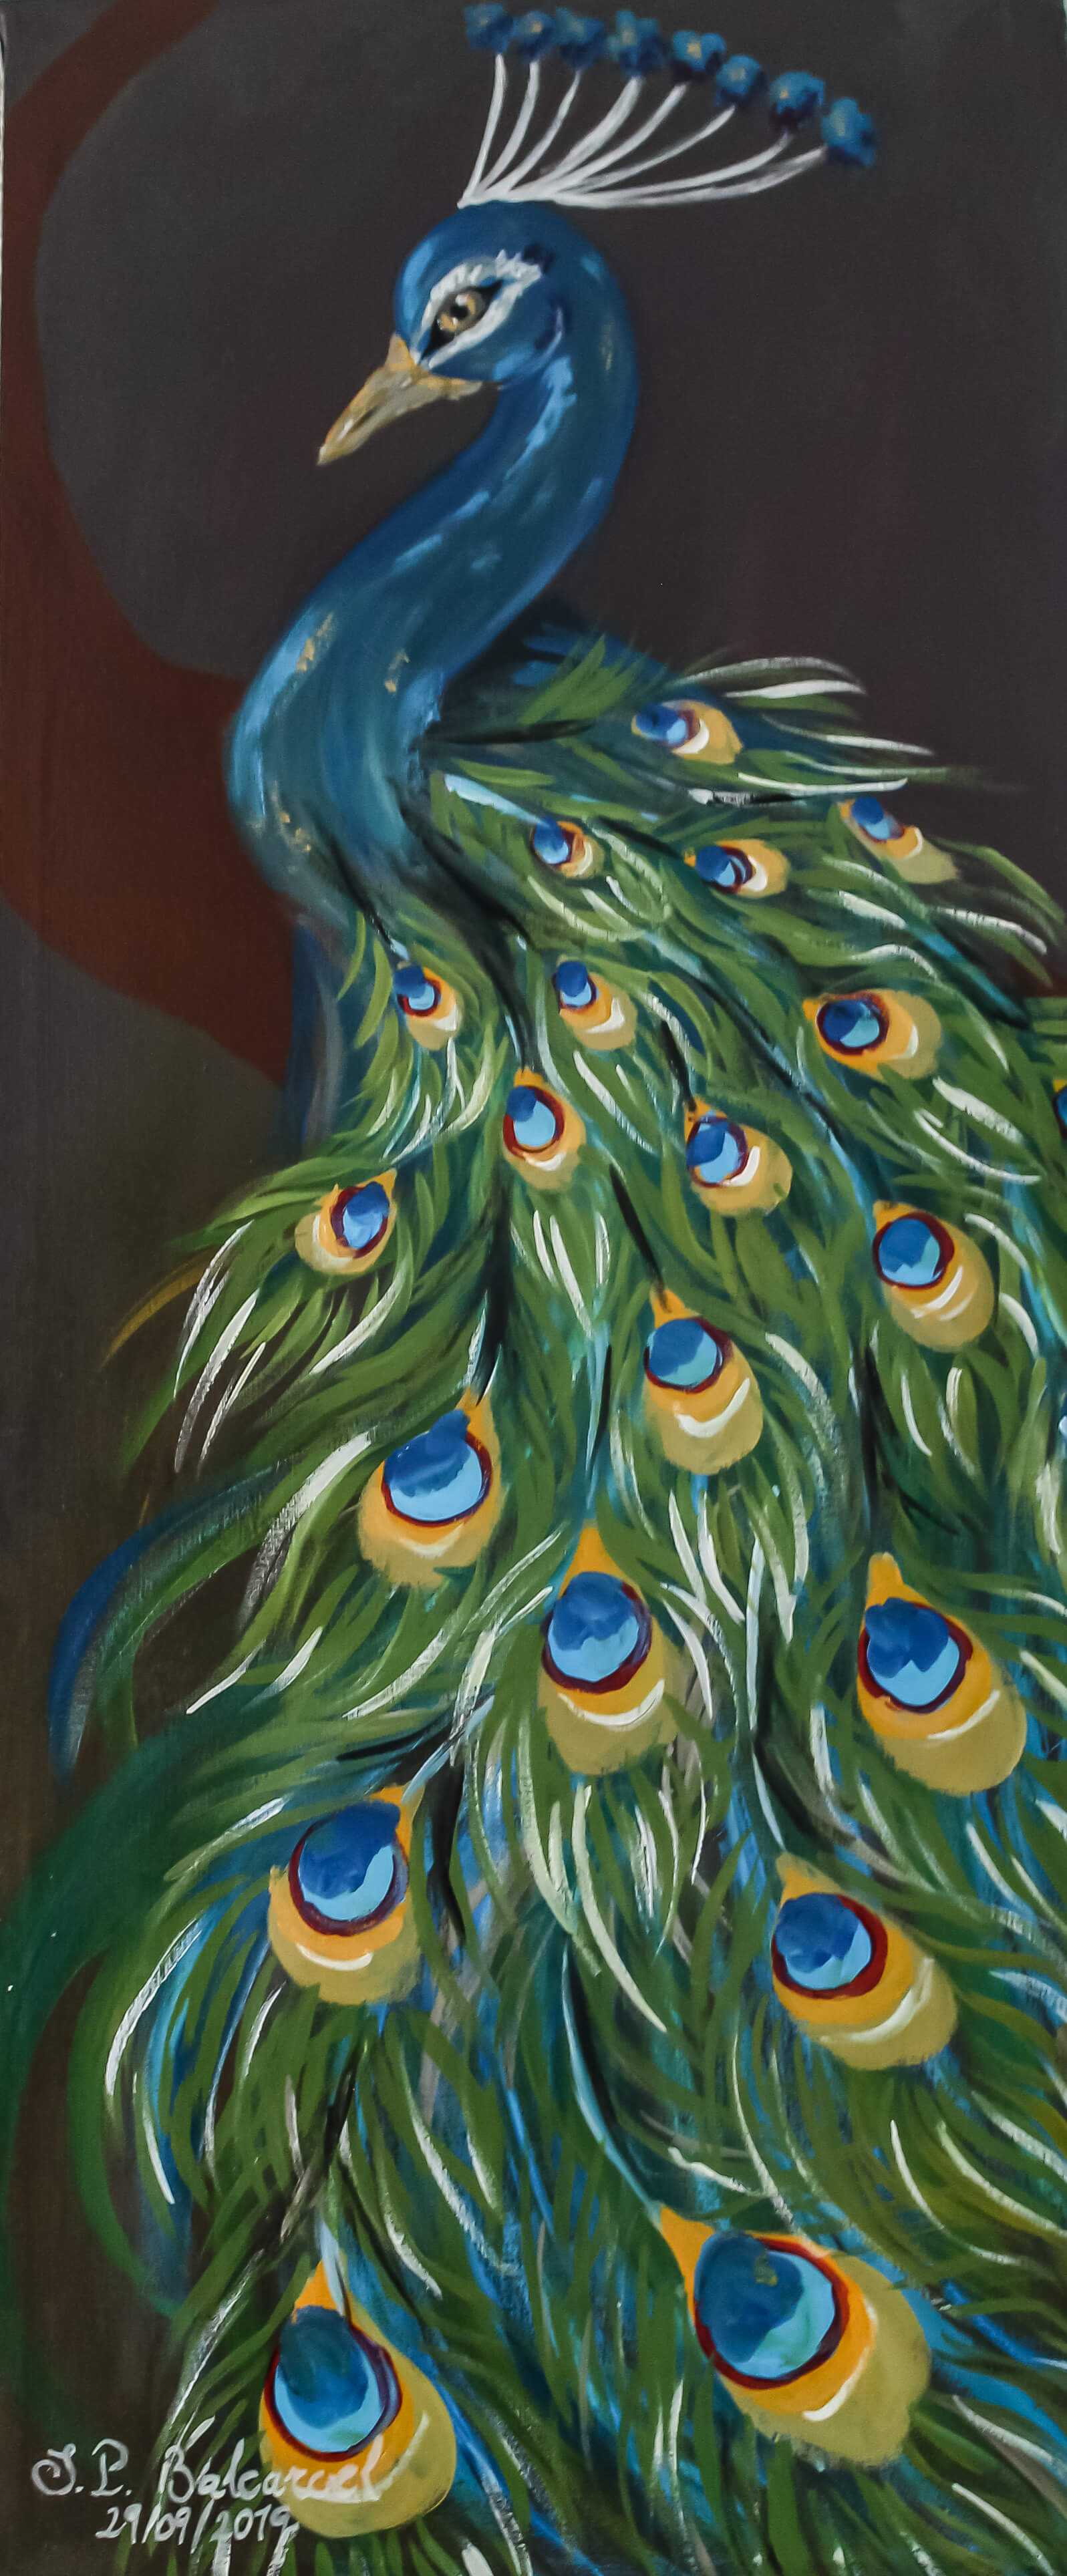 Obra de arte: Un pavo real por S.P. Balcarcel. Estilo: Fantástico. Técnica: Acrílico sobre lienzo